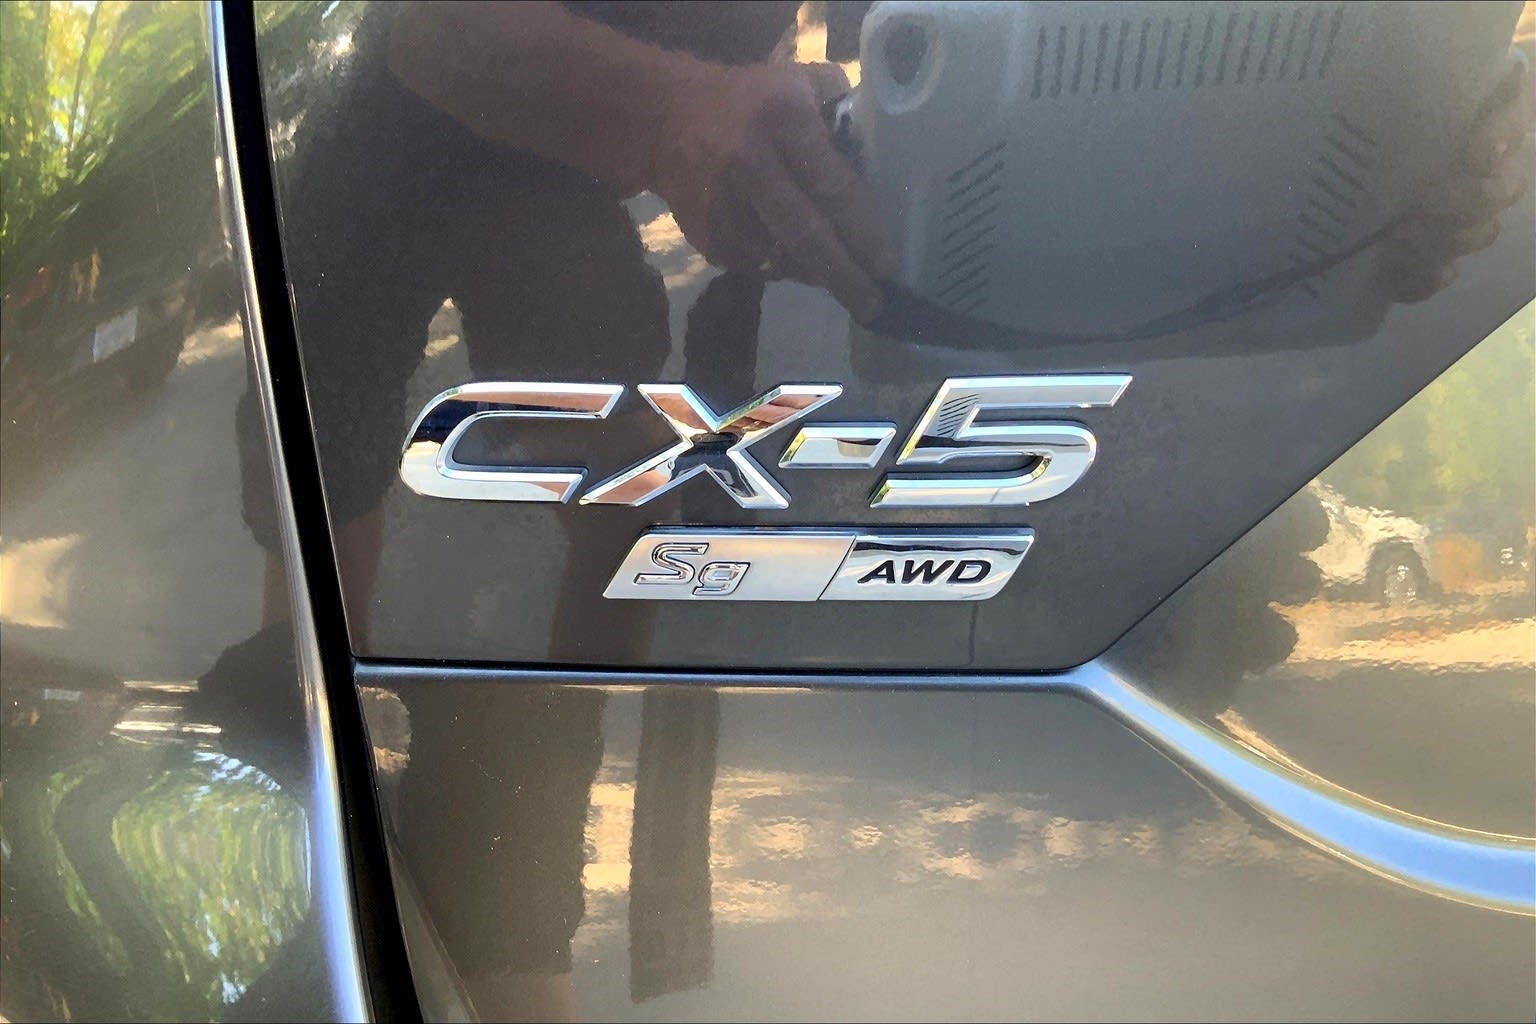 2019 Mazda Mazda CX-5 Signature AWD